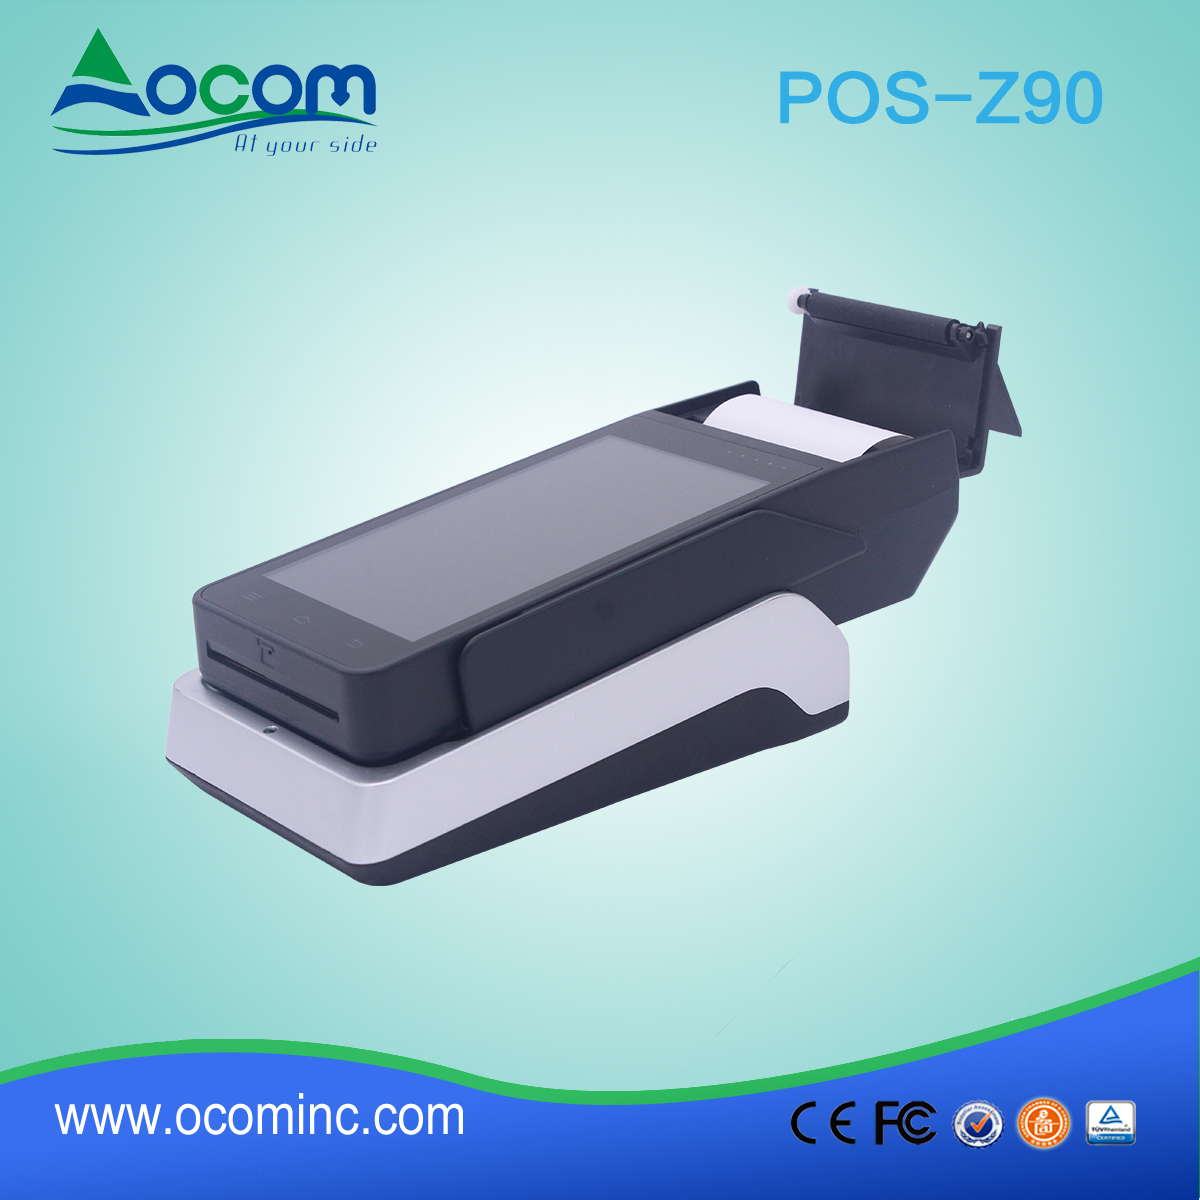 Nuova macchina di pagamento portatile POS con stampante incorporata da 58 mm (POS -Z90)